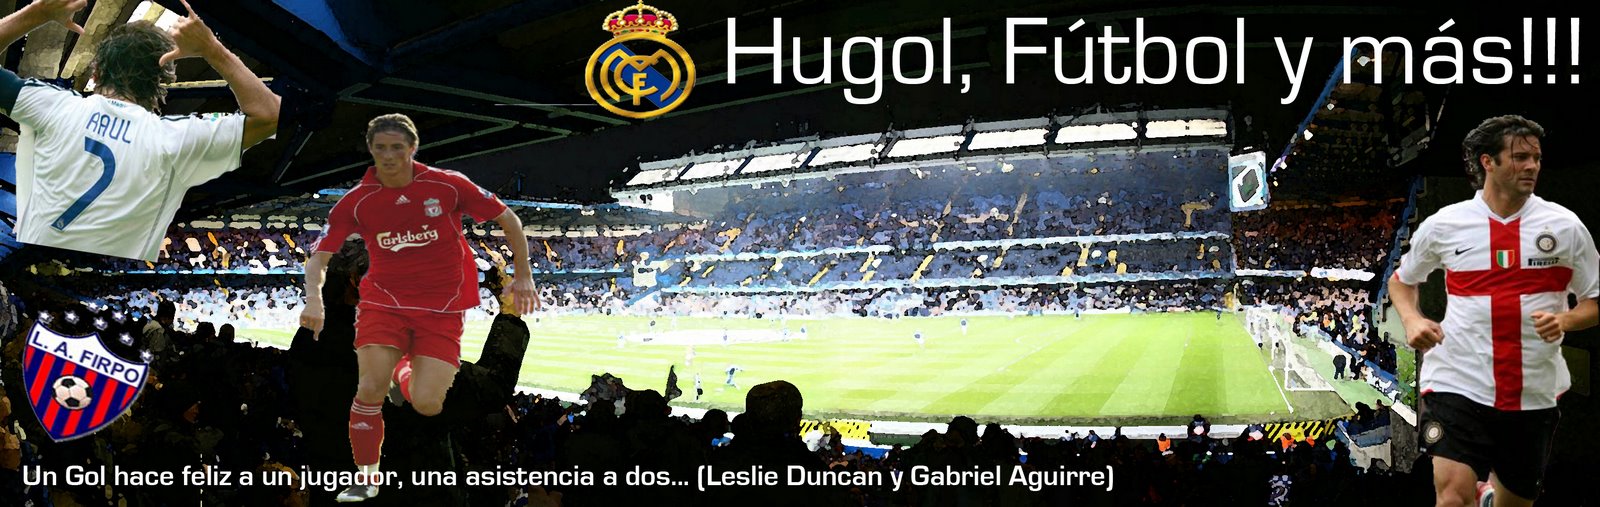 Hugol, Futbol, Goles y Afición!!!